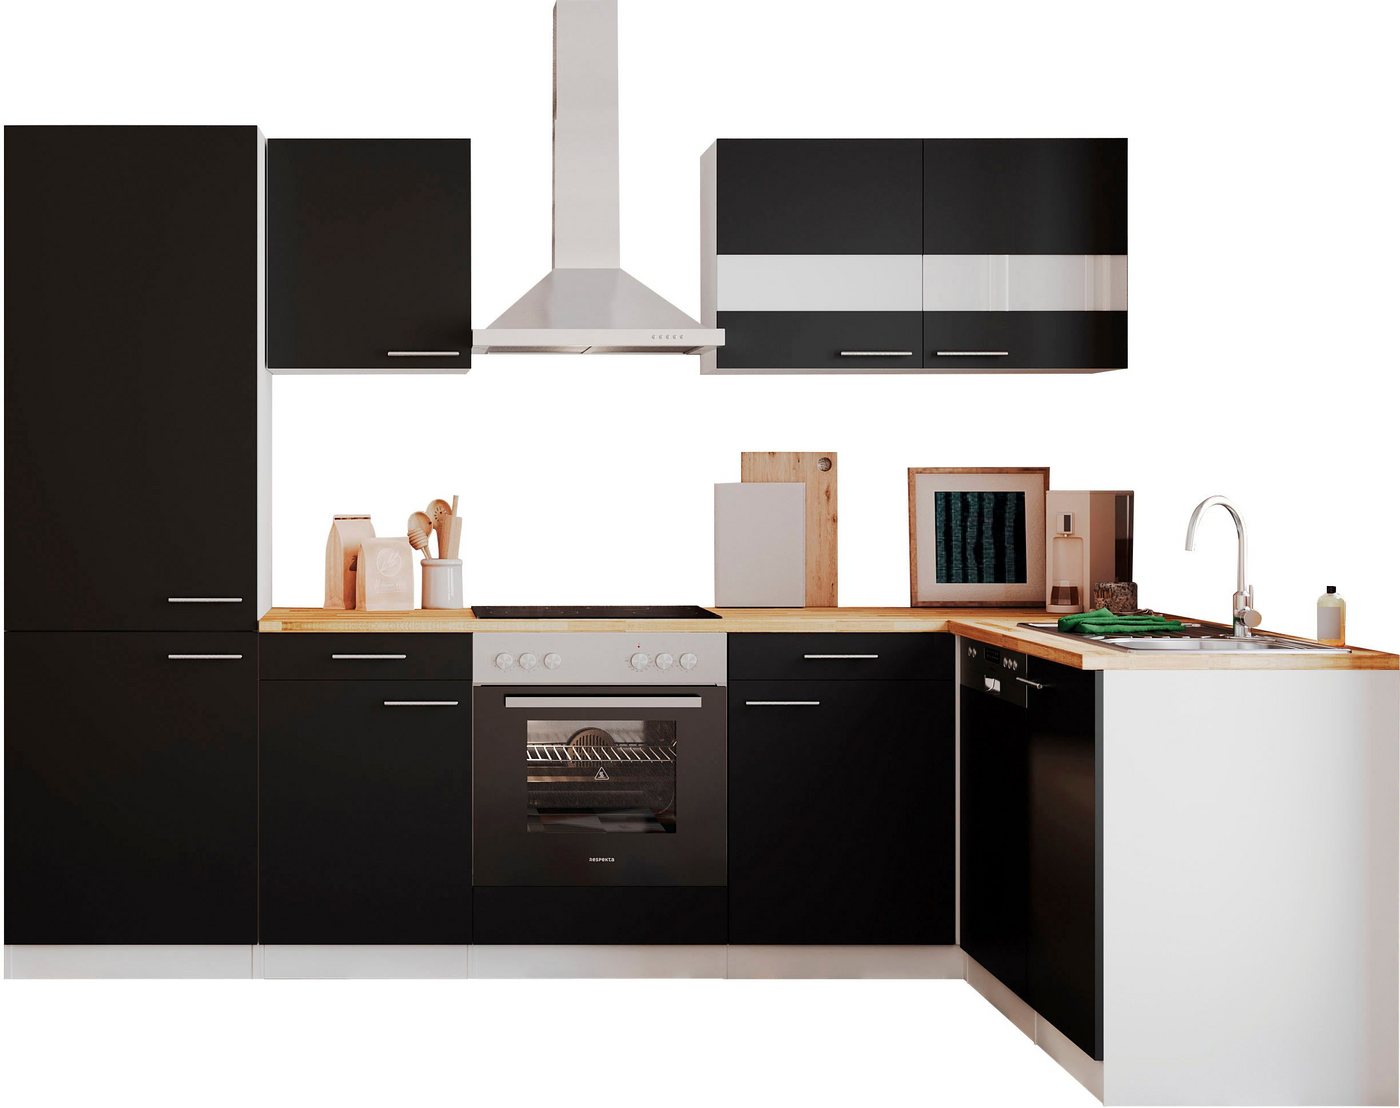 RESPEKTA Küchenzeile Malia, Breite 280 cm, mit Soft-Close, in exklusiver Konfiguration für OTTO von RESPEKTA